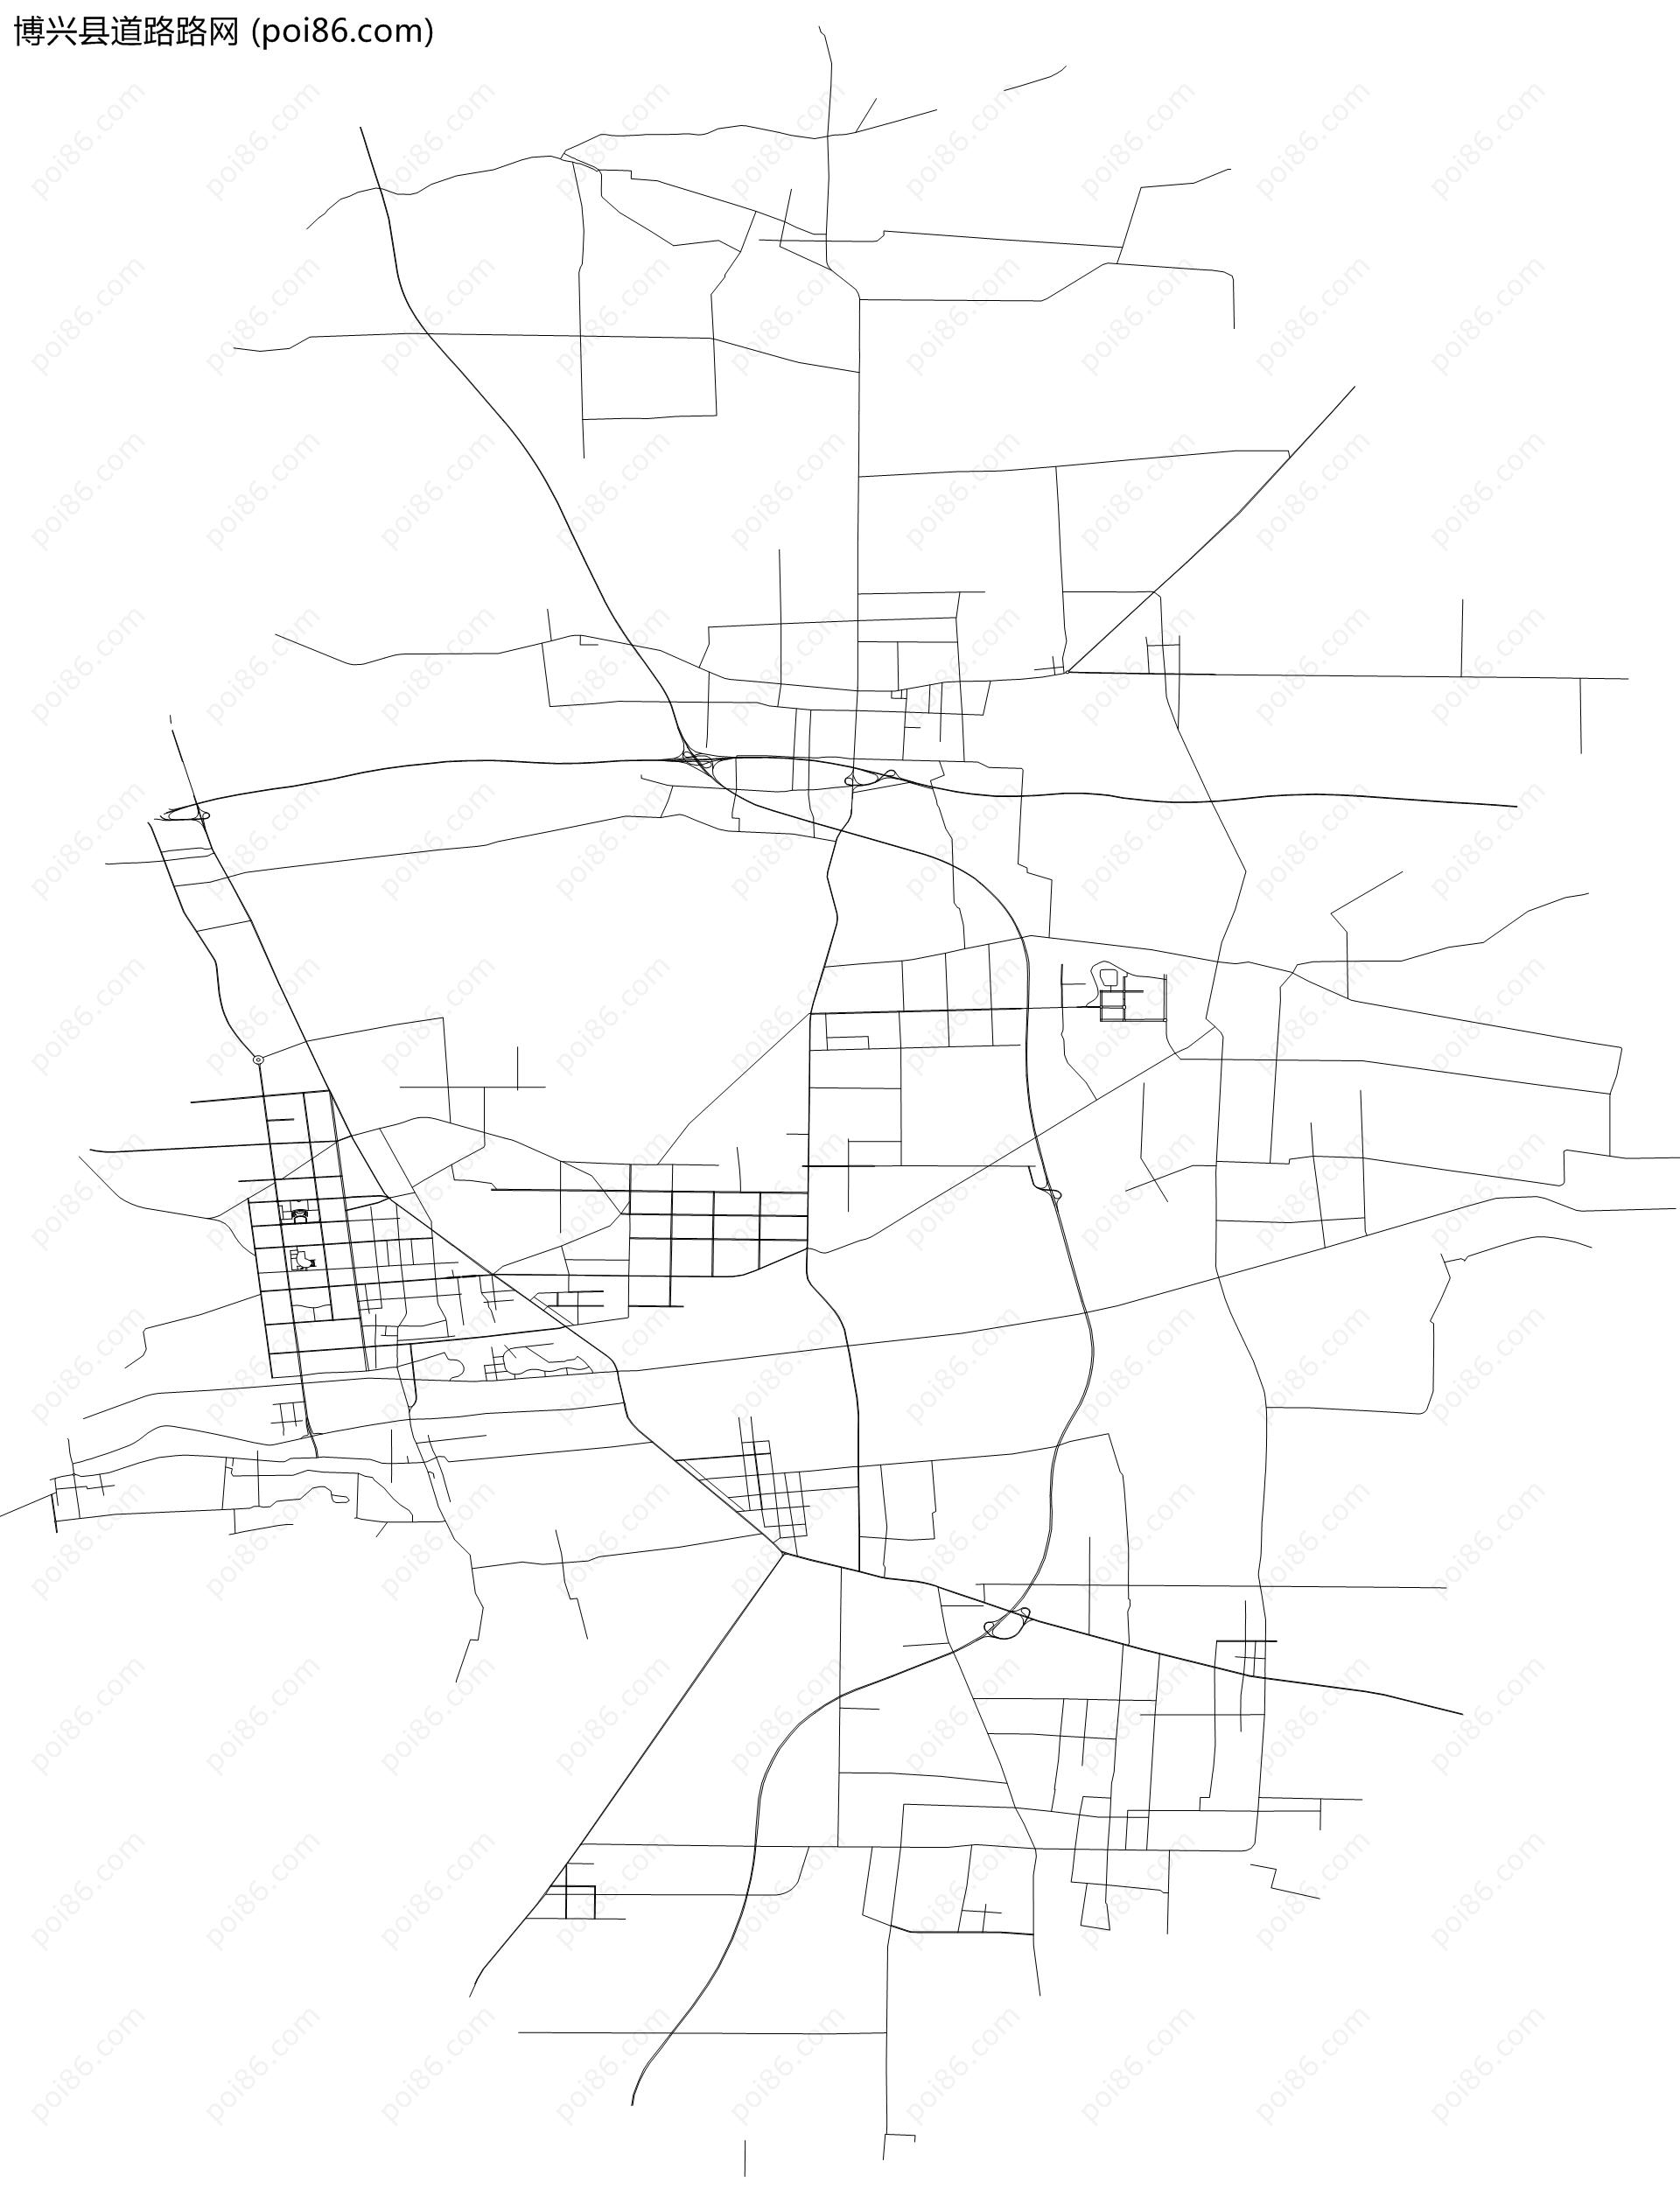 博兴县道路路网地图